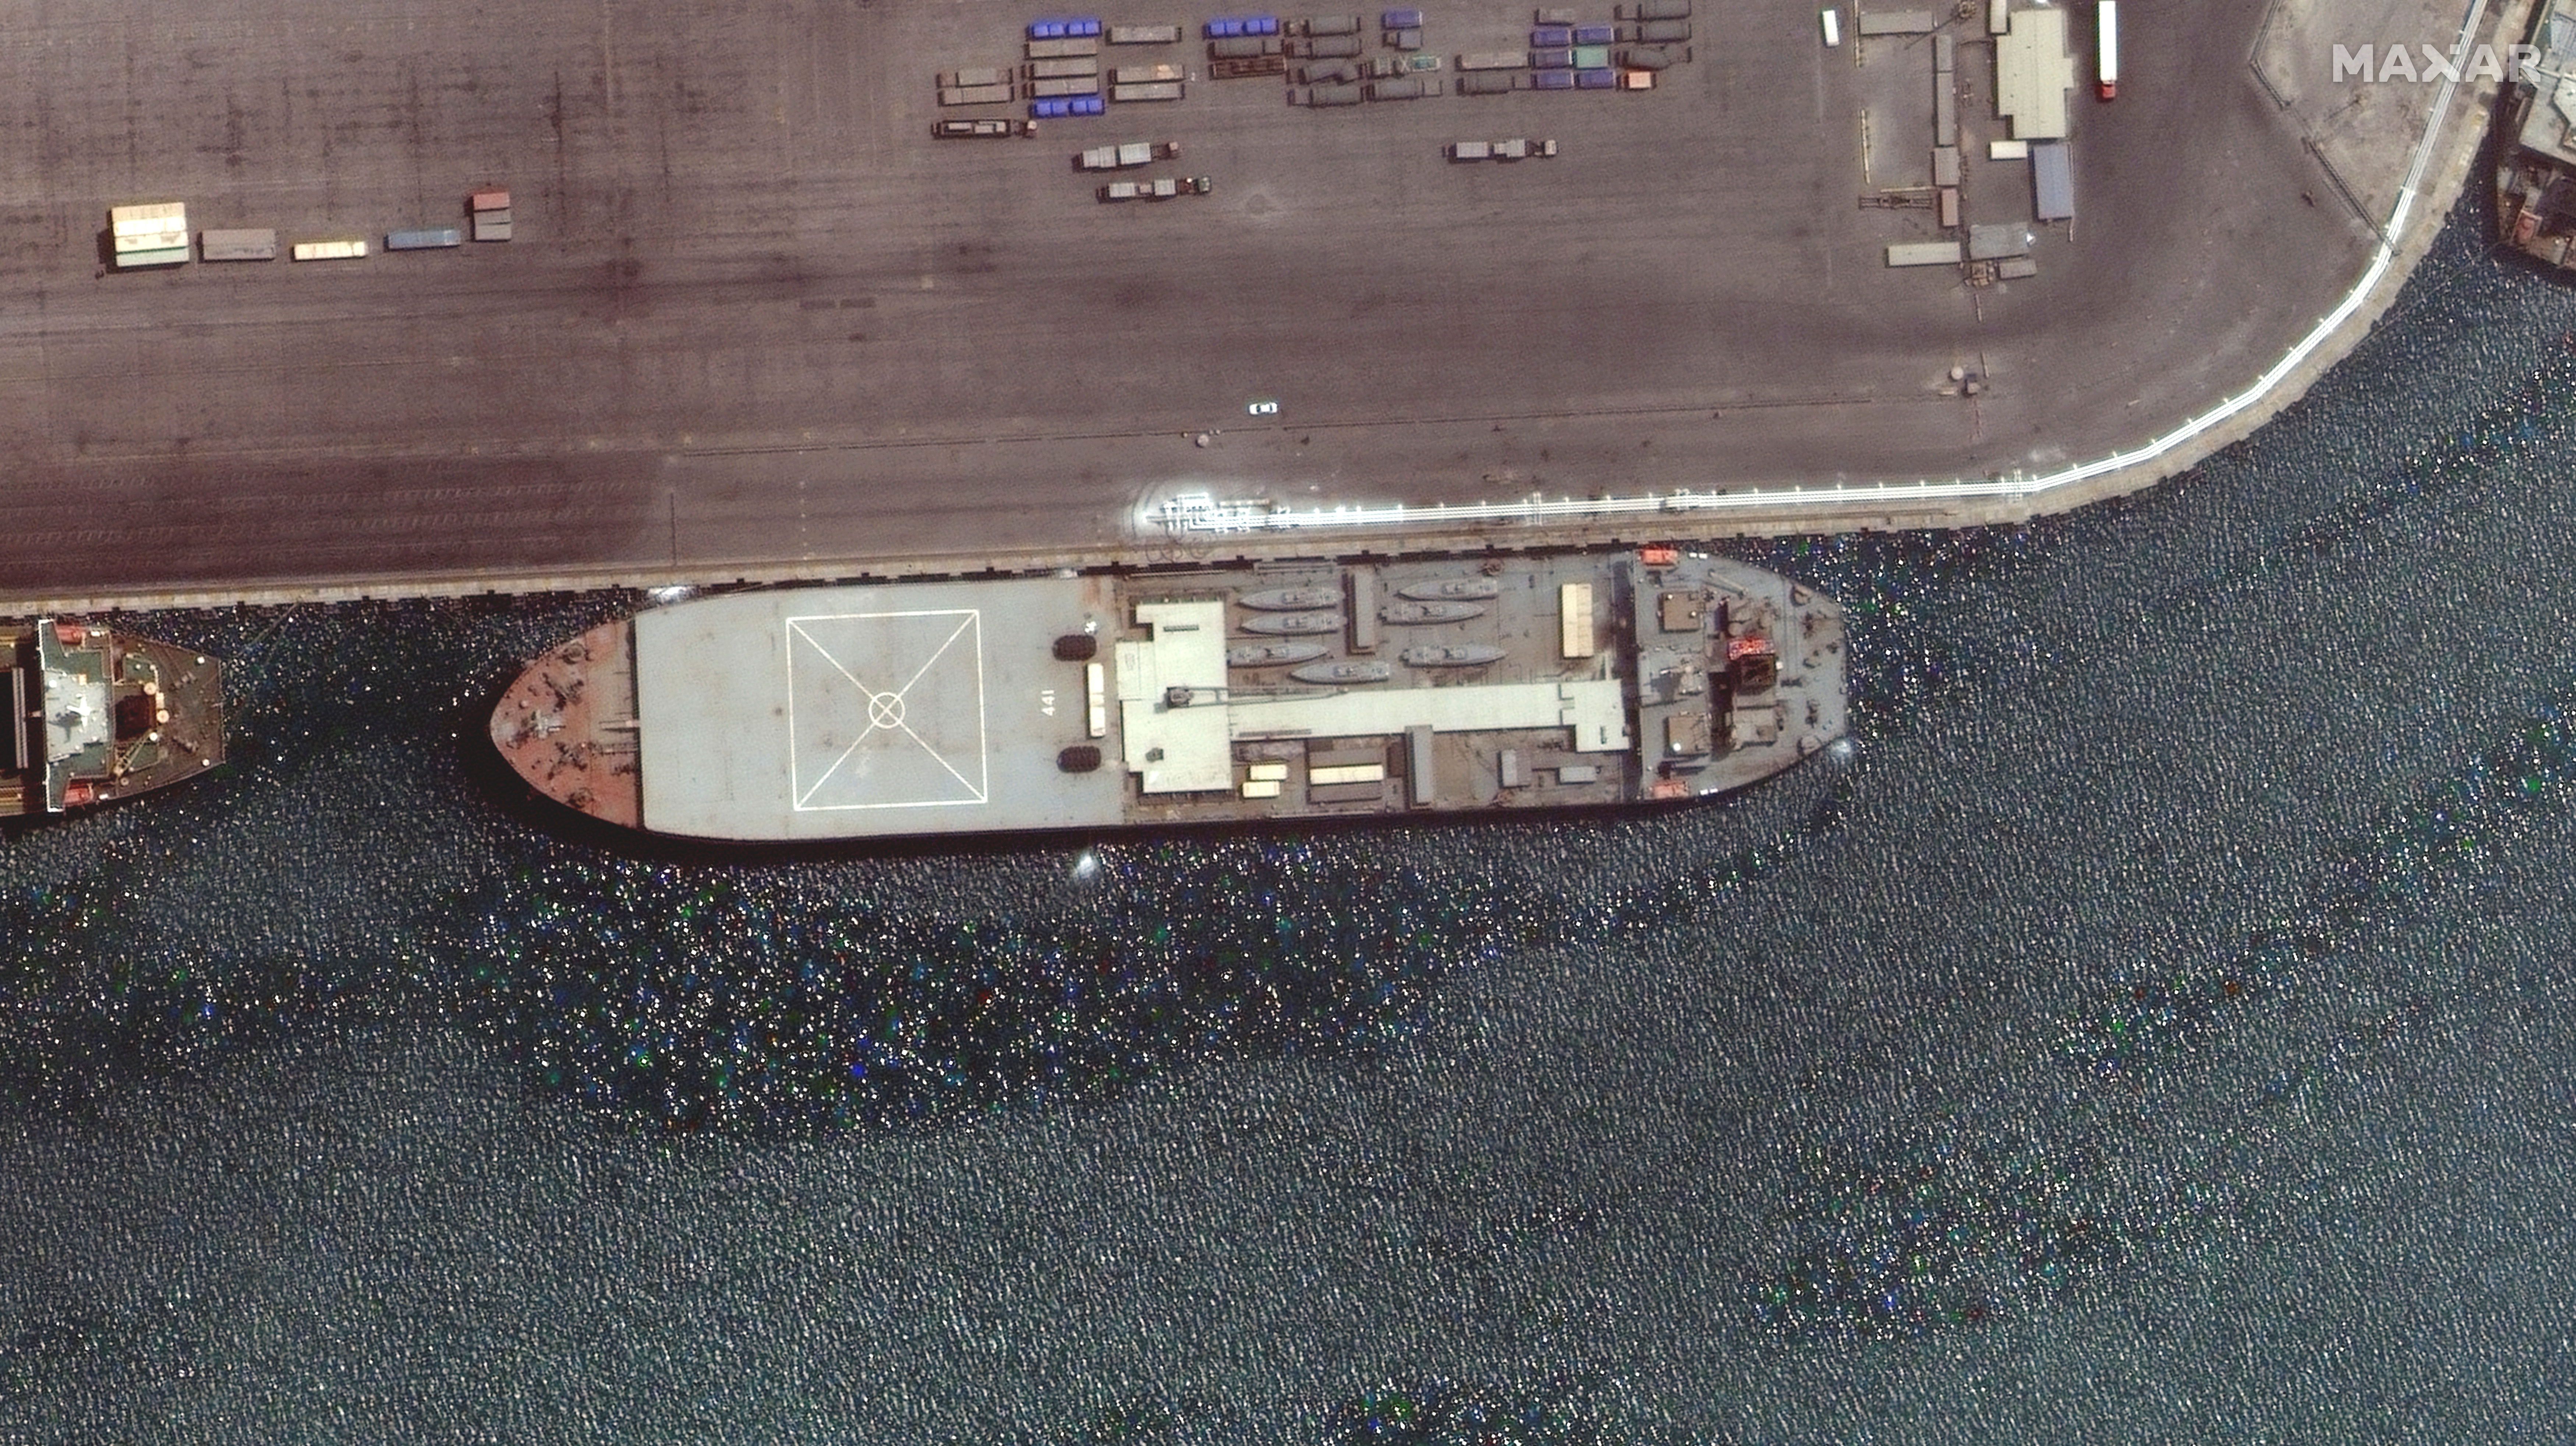 Barco naval iraní, el Makran, se ve en Bandar Abbas, Irán, en esta imagen de satélite tomada el 28 de abril de 2021. Imagen tomada el 28 de abril de 2021. Imagen de satélite ©2021 Maxar Technologies